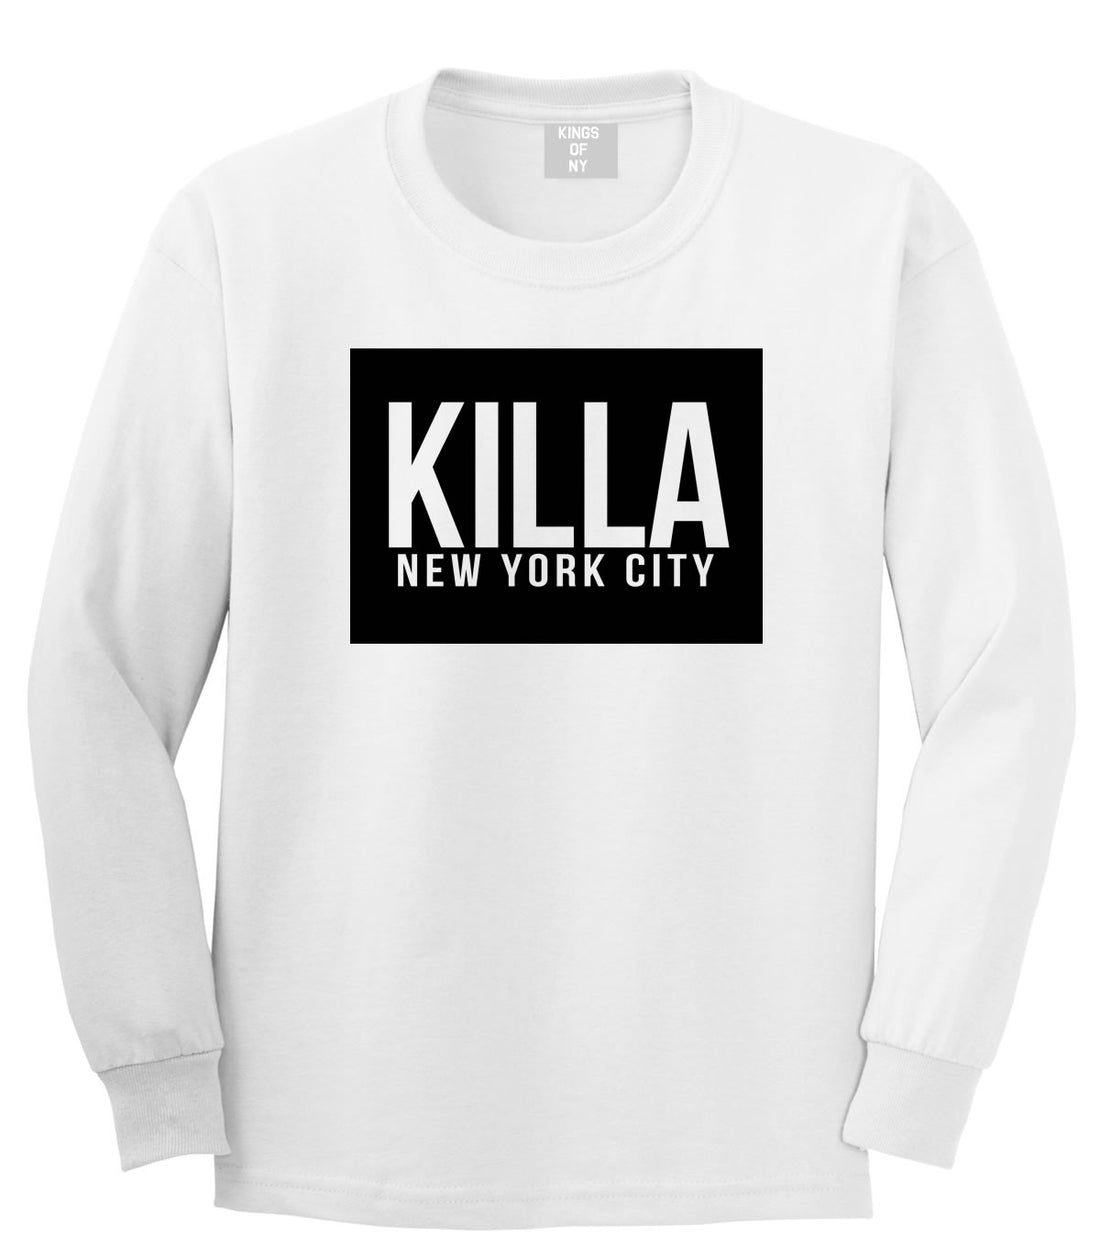 Killa New York City Harlem Long Sleeve T-Shirt in White by Kings Of NY